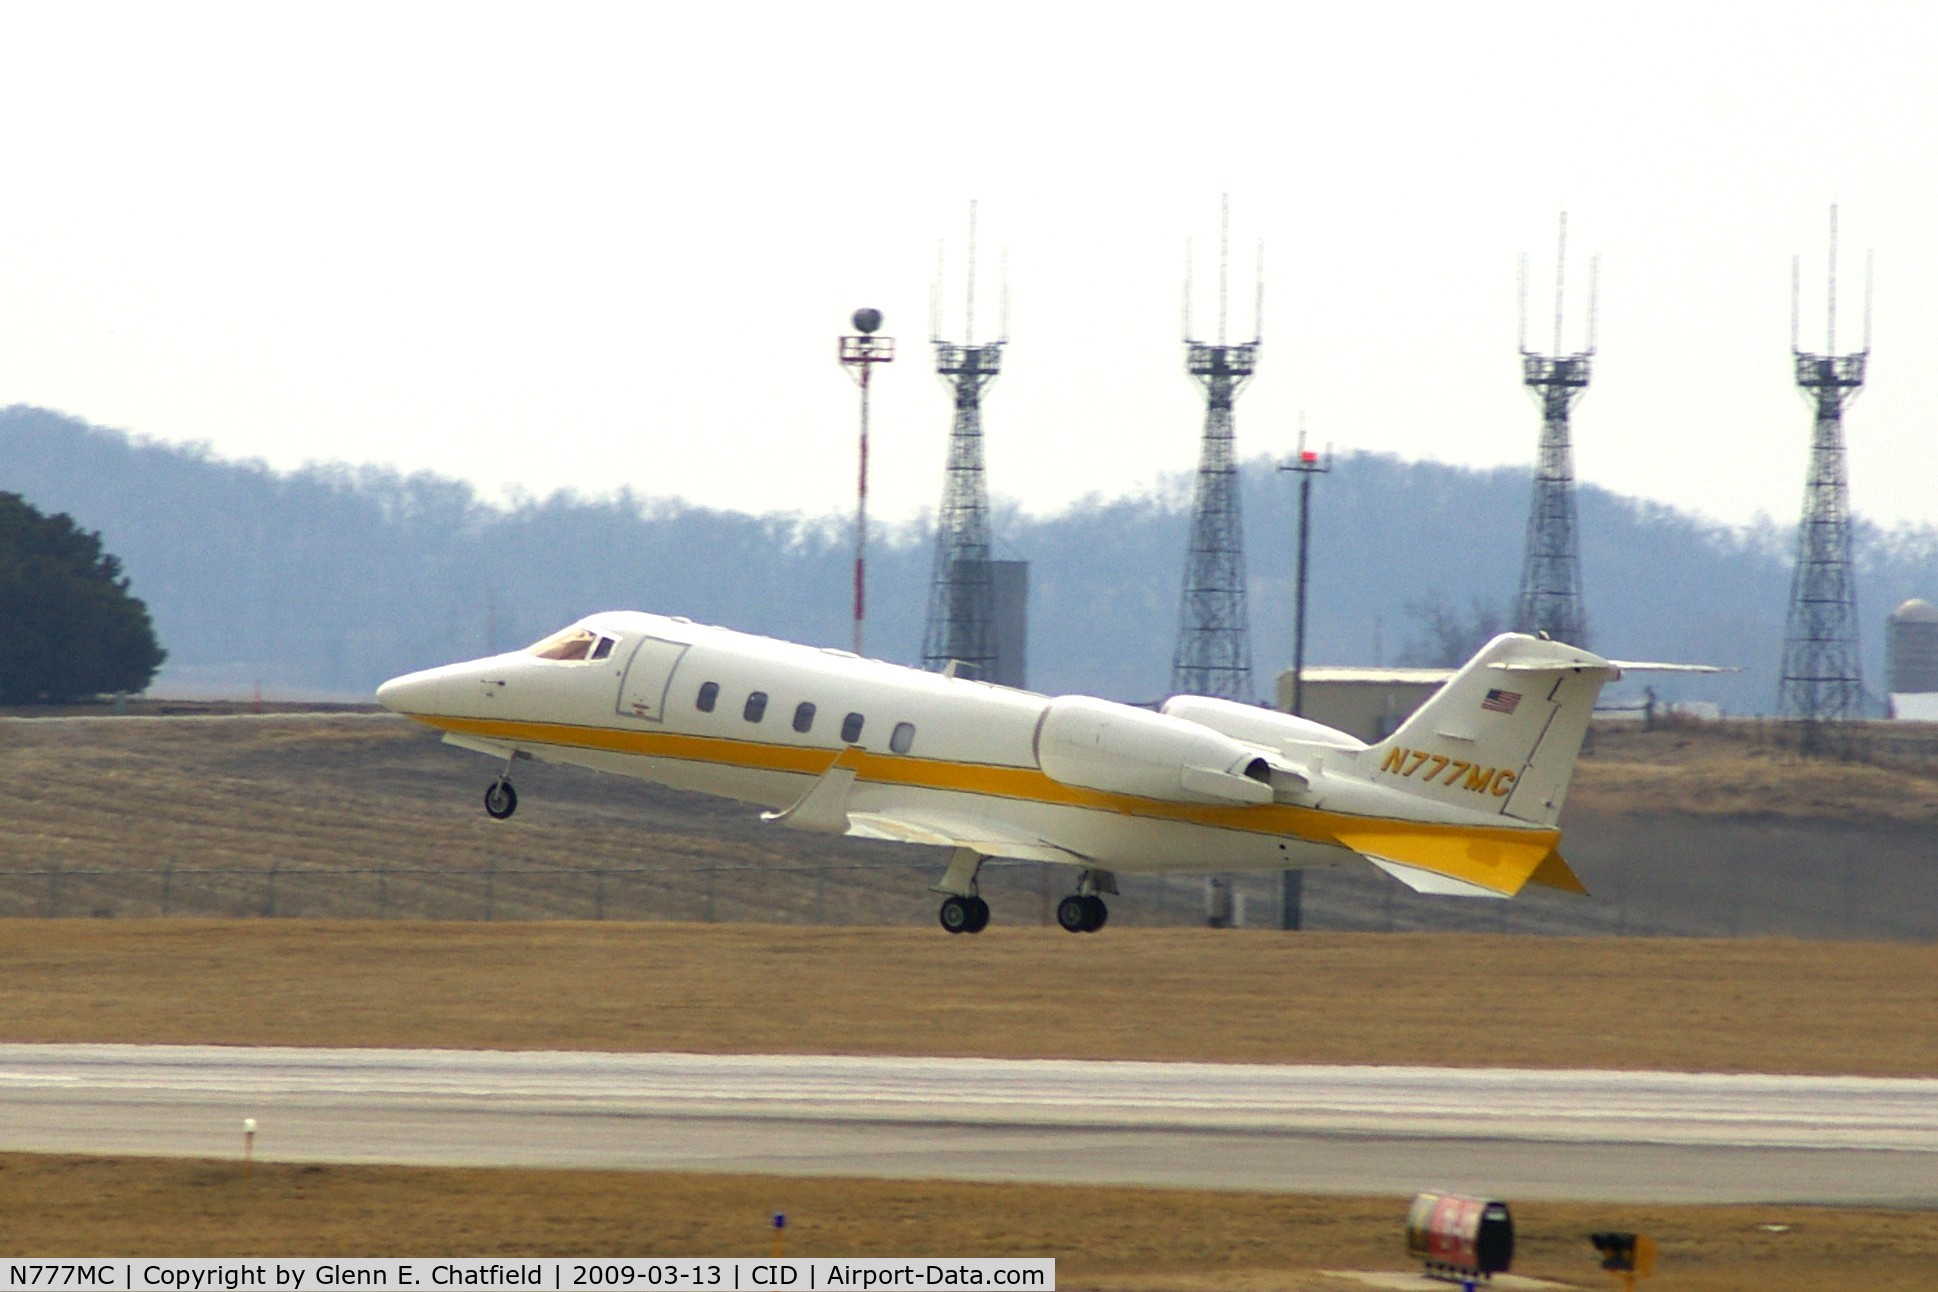 N777MC, 2000 Learjet Inc 60 C/N 180, Departing runway 13